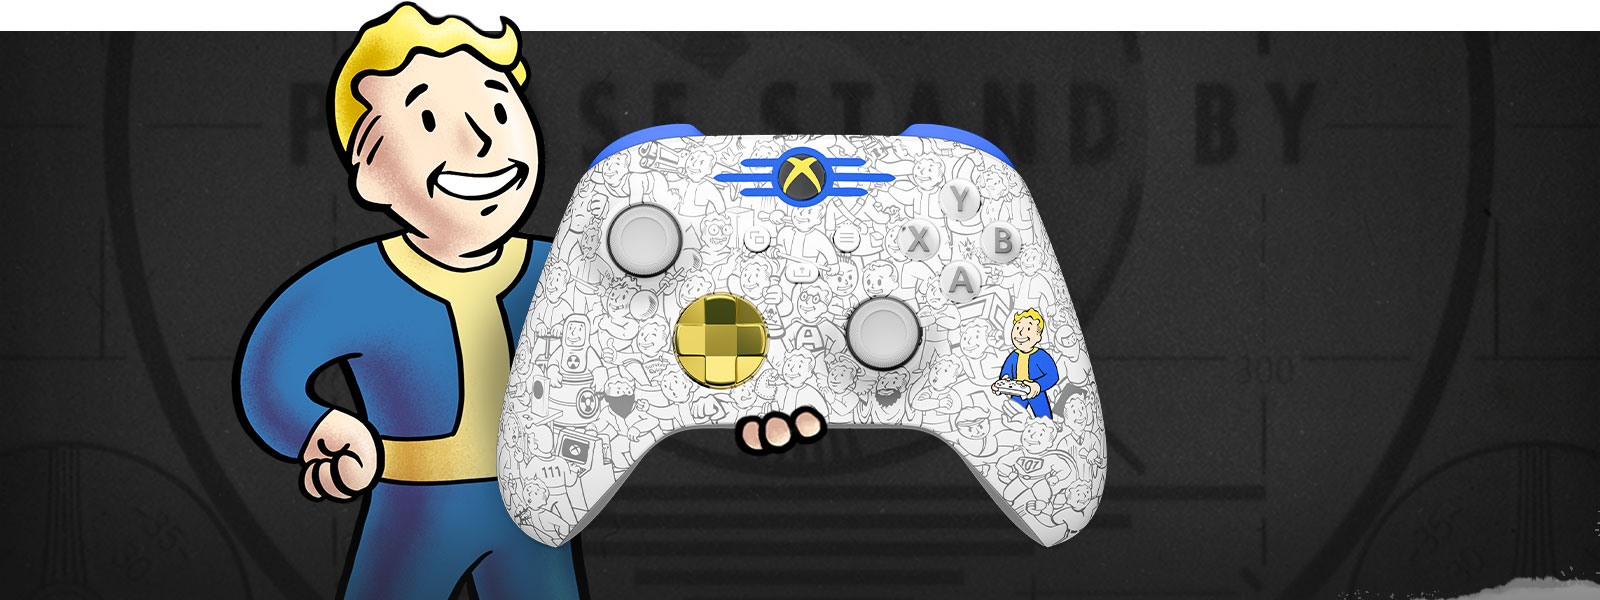 Vault Boy toont een Xbox draadloze controller - Fallout-editie in zijn handpalm. Achter hem zie je een scherm met de boodschap “EVEN GEDULD”.